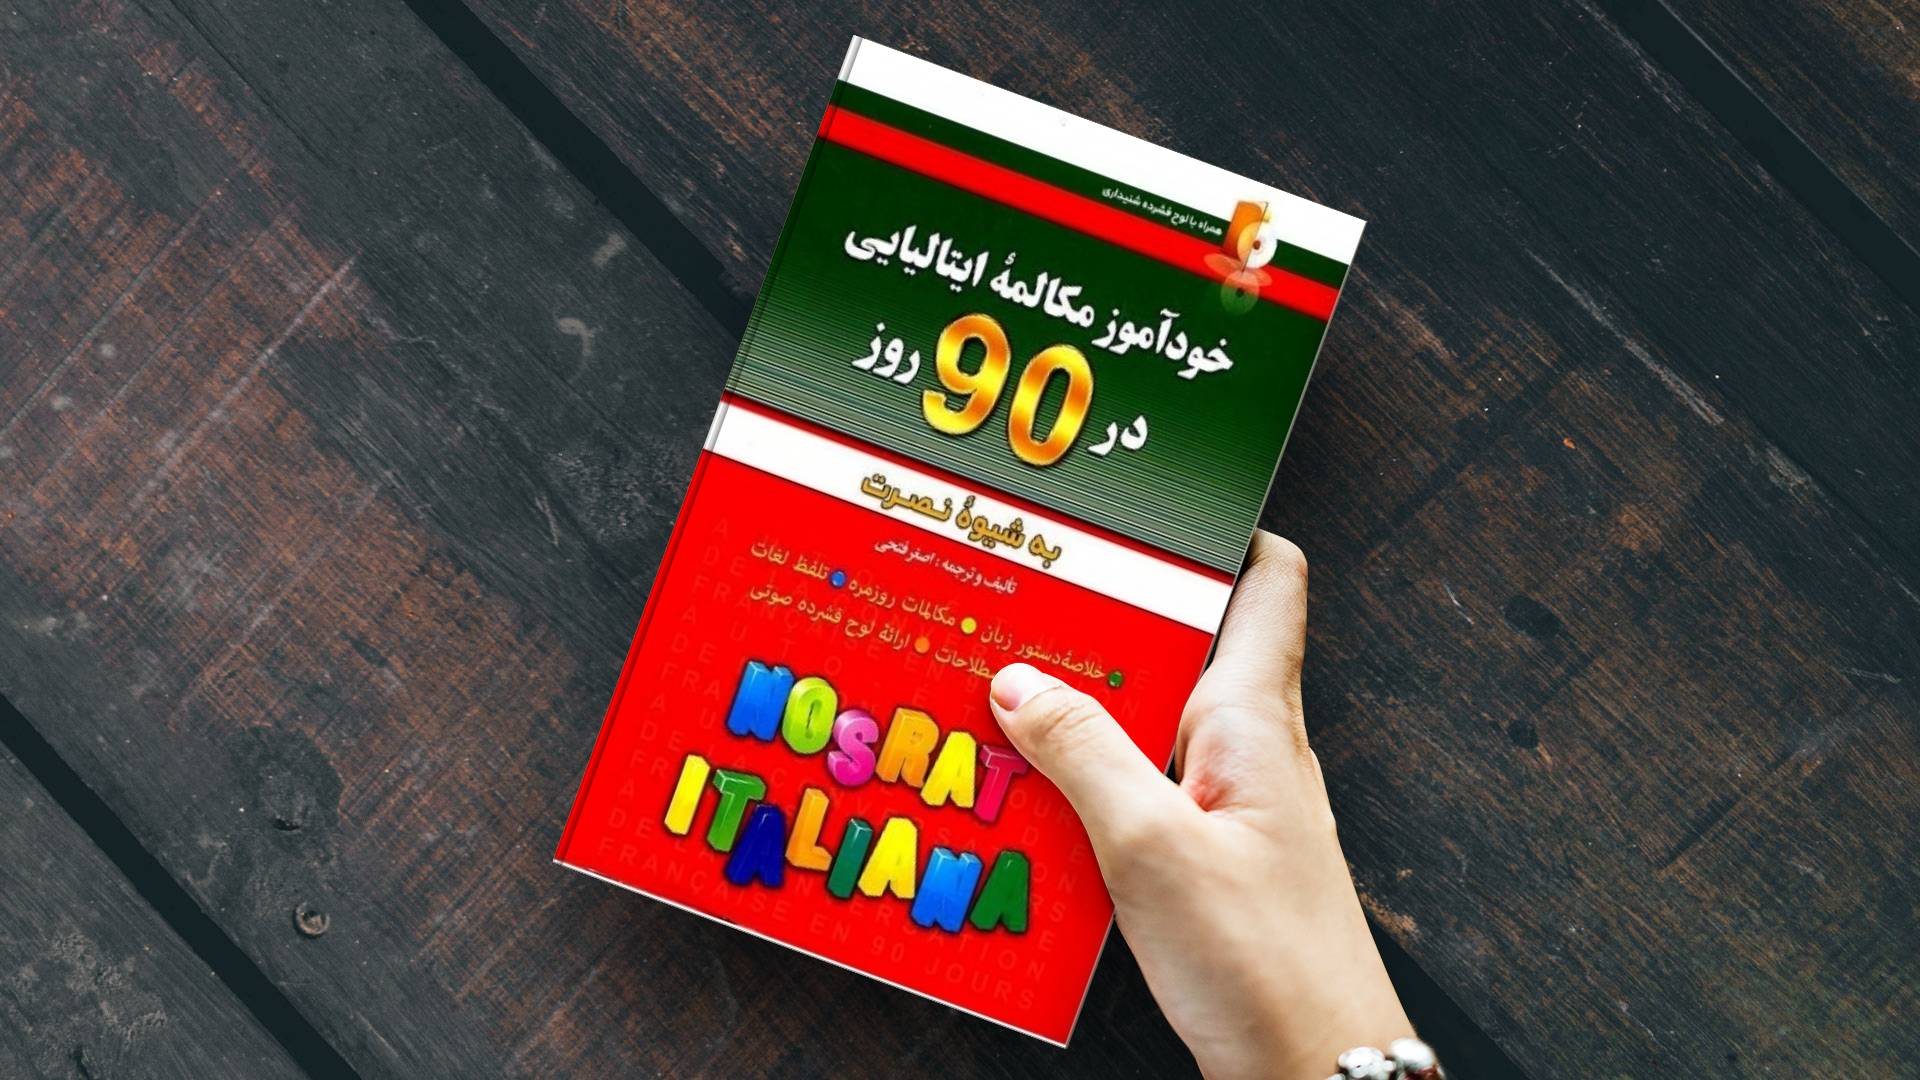 خرید کتاب زبان | زبان استور | کتاب خودآموز زبان ایتالیایی | آموزش مکالمات ایتالیایی در 90 روز به شیوه نوین